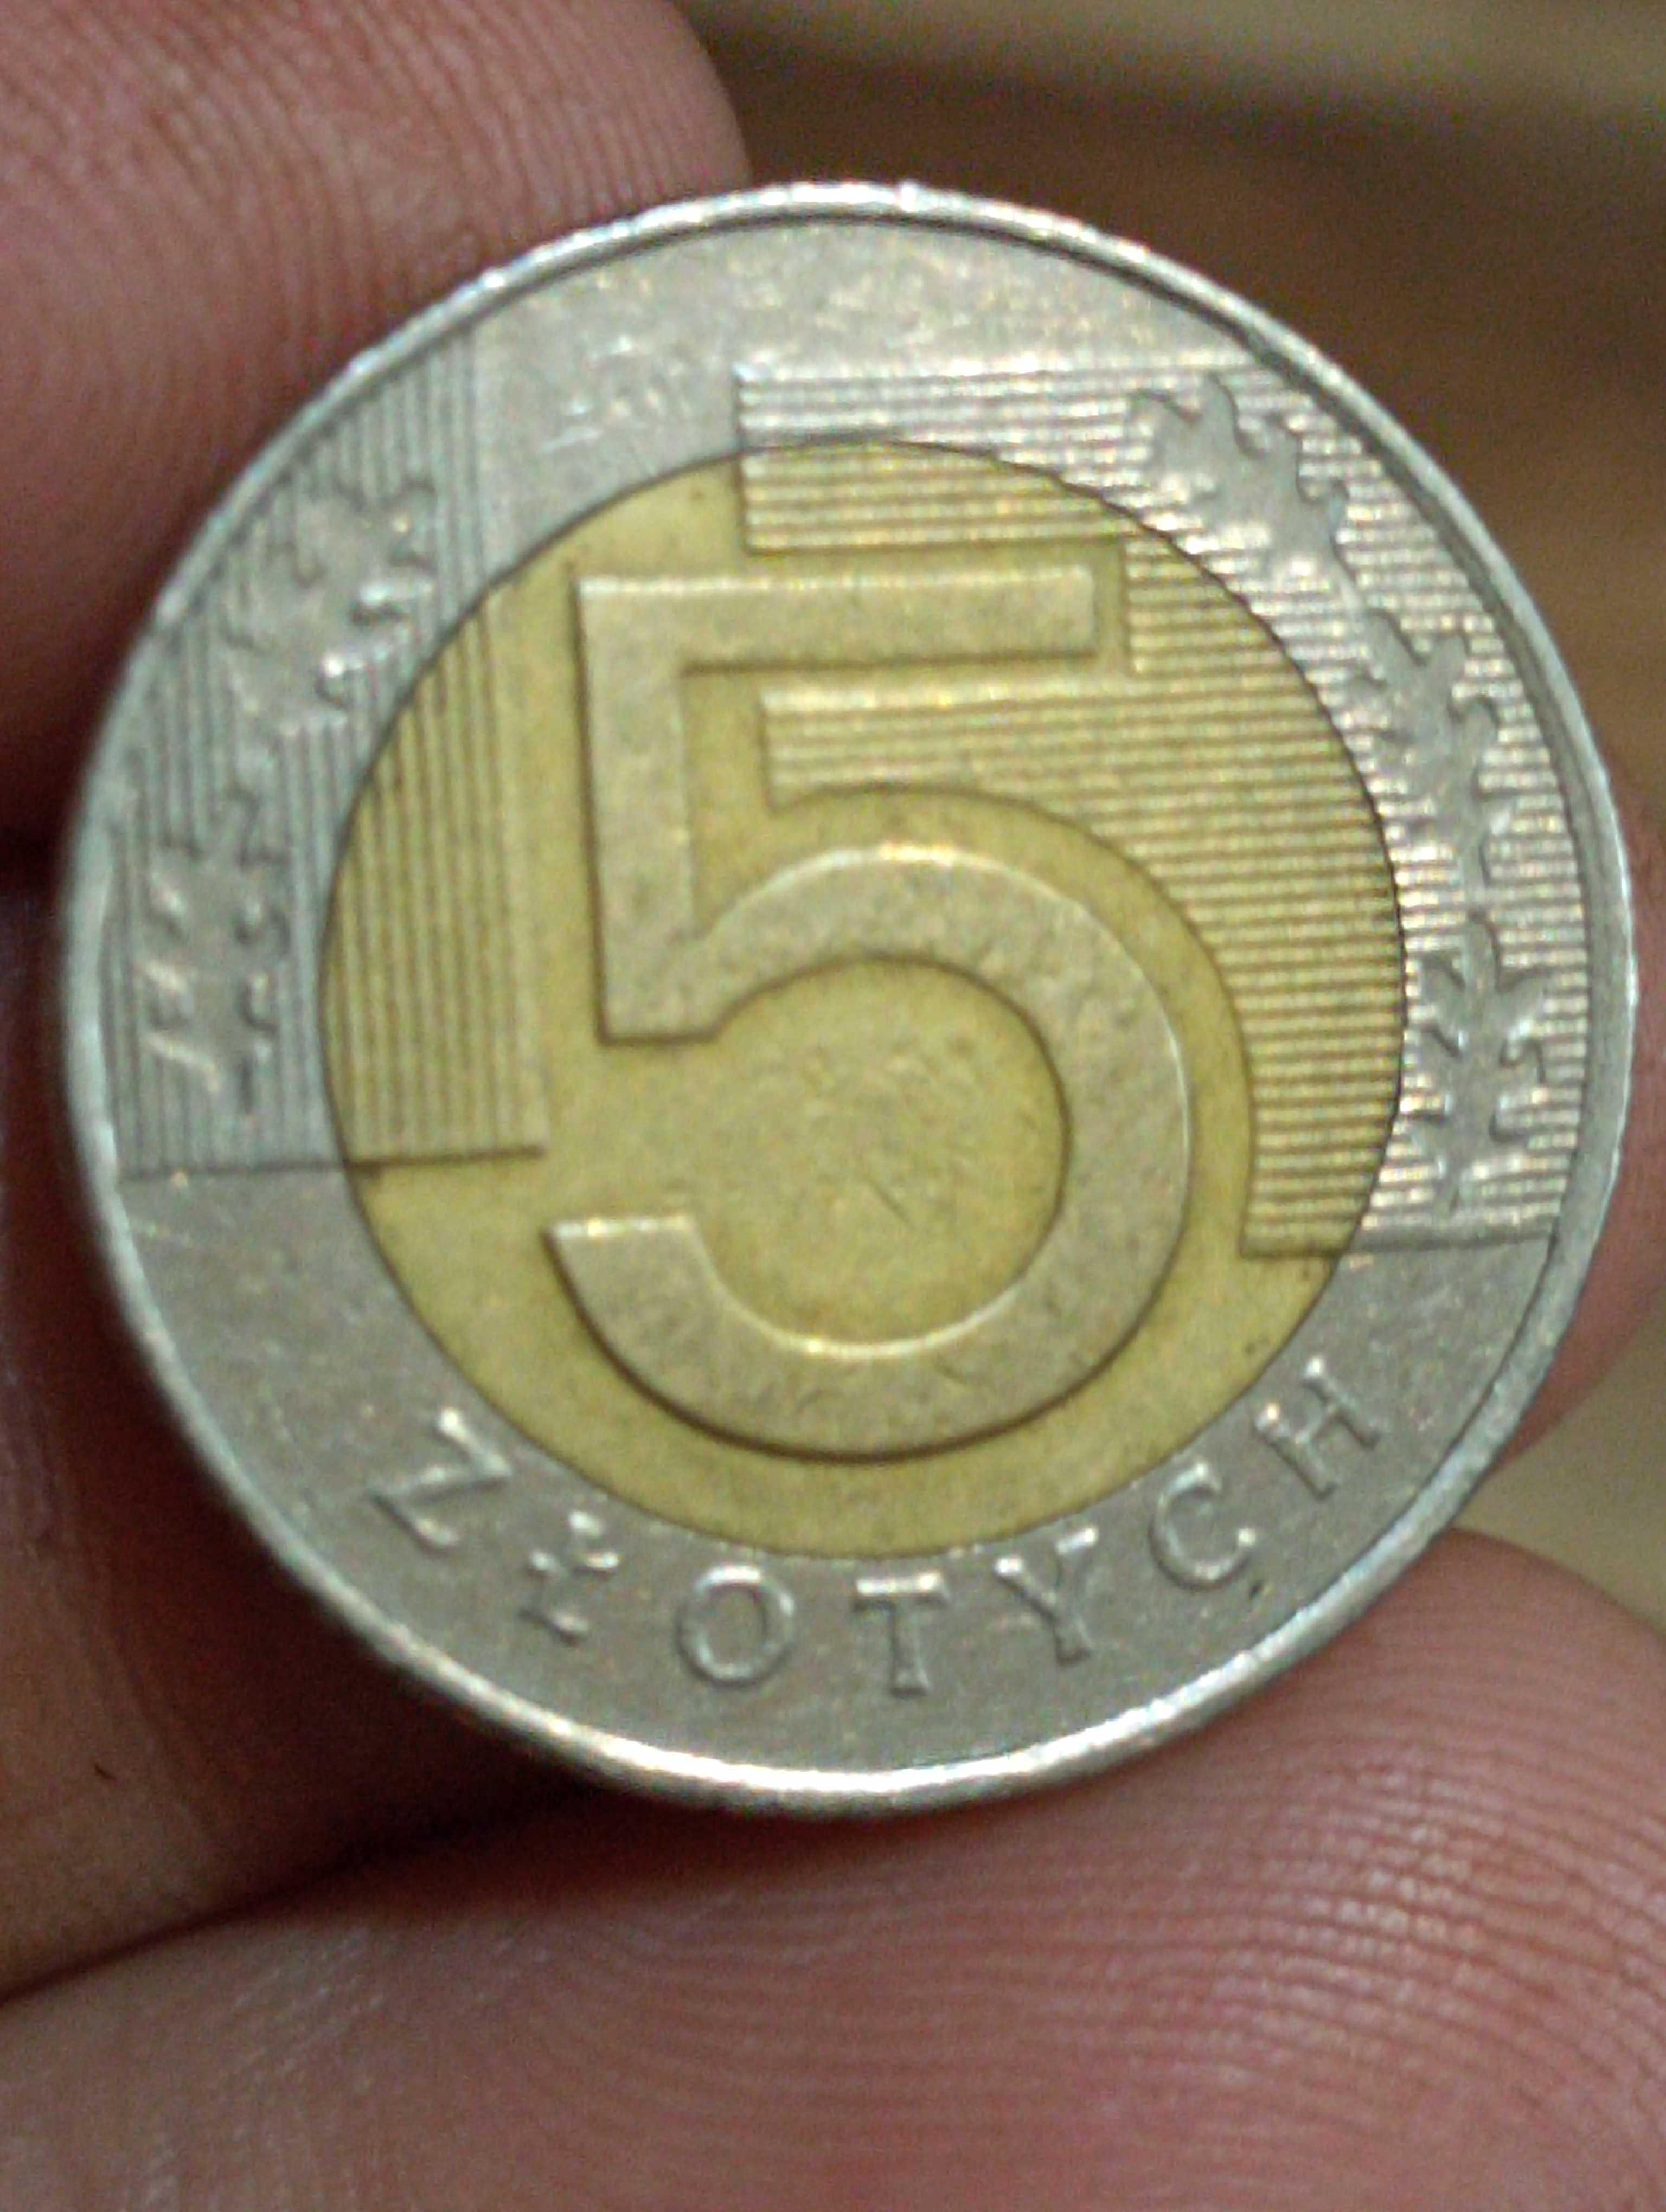 Sprzedam nb monete 5 zl 1994 r